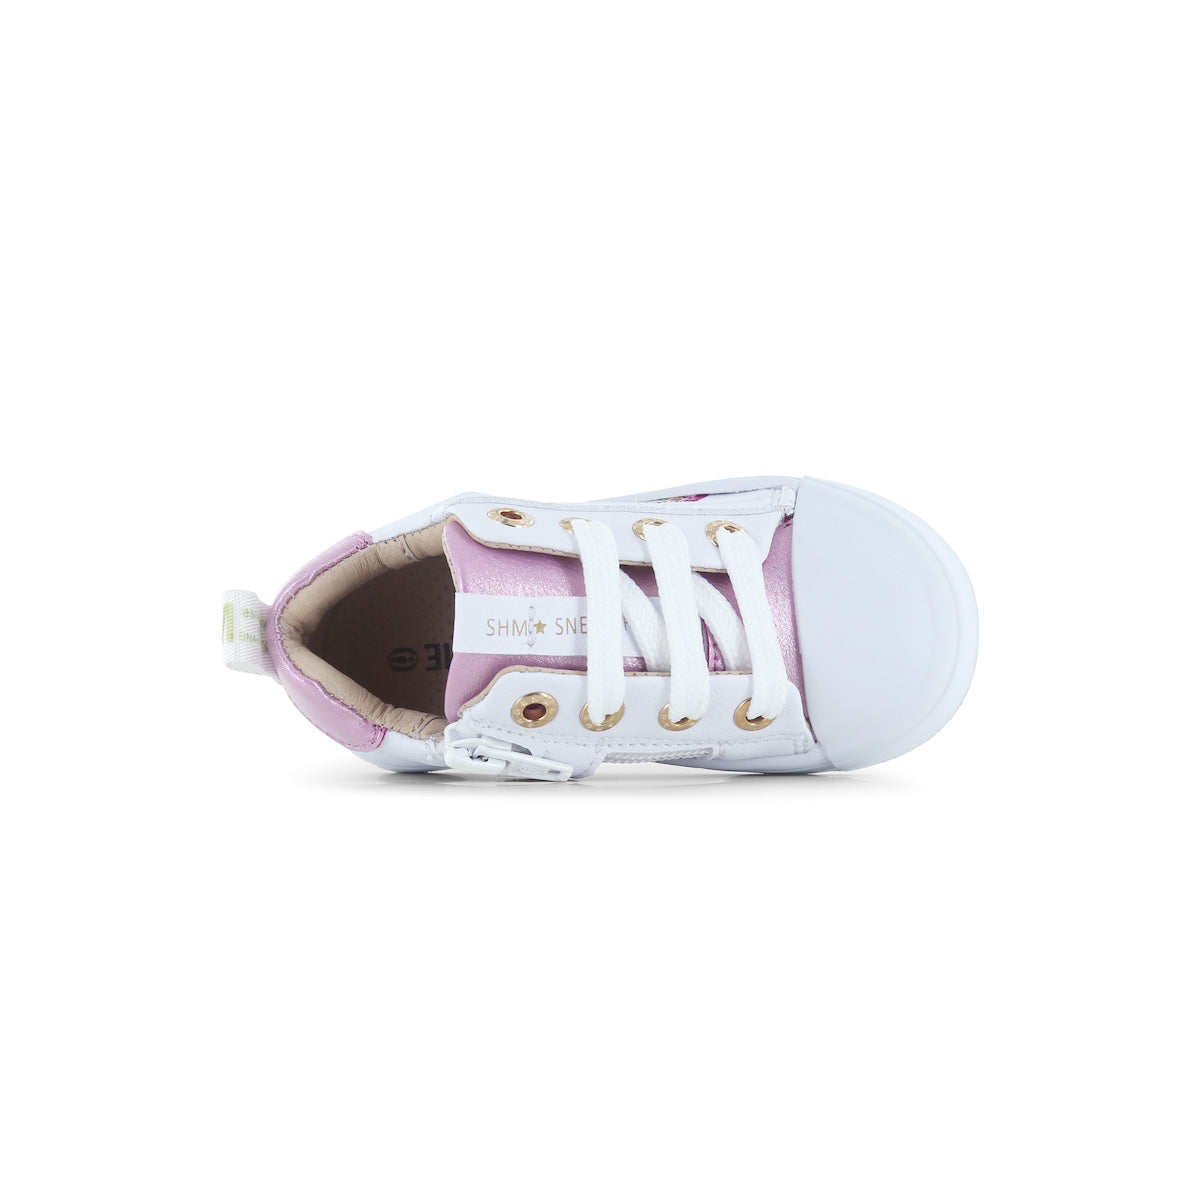 De Shoesme sneakers white pink zijn super leuke schoenen voor jouw kindje. Shoesme heeft een hele uitgebreide sneaker collectie. Alle sneakers zien er tof uit want er is veel aandacht besteed aan de details. VanZus.